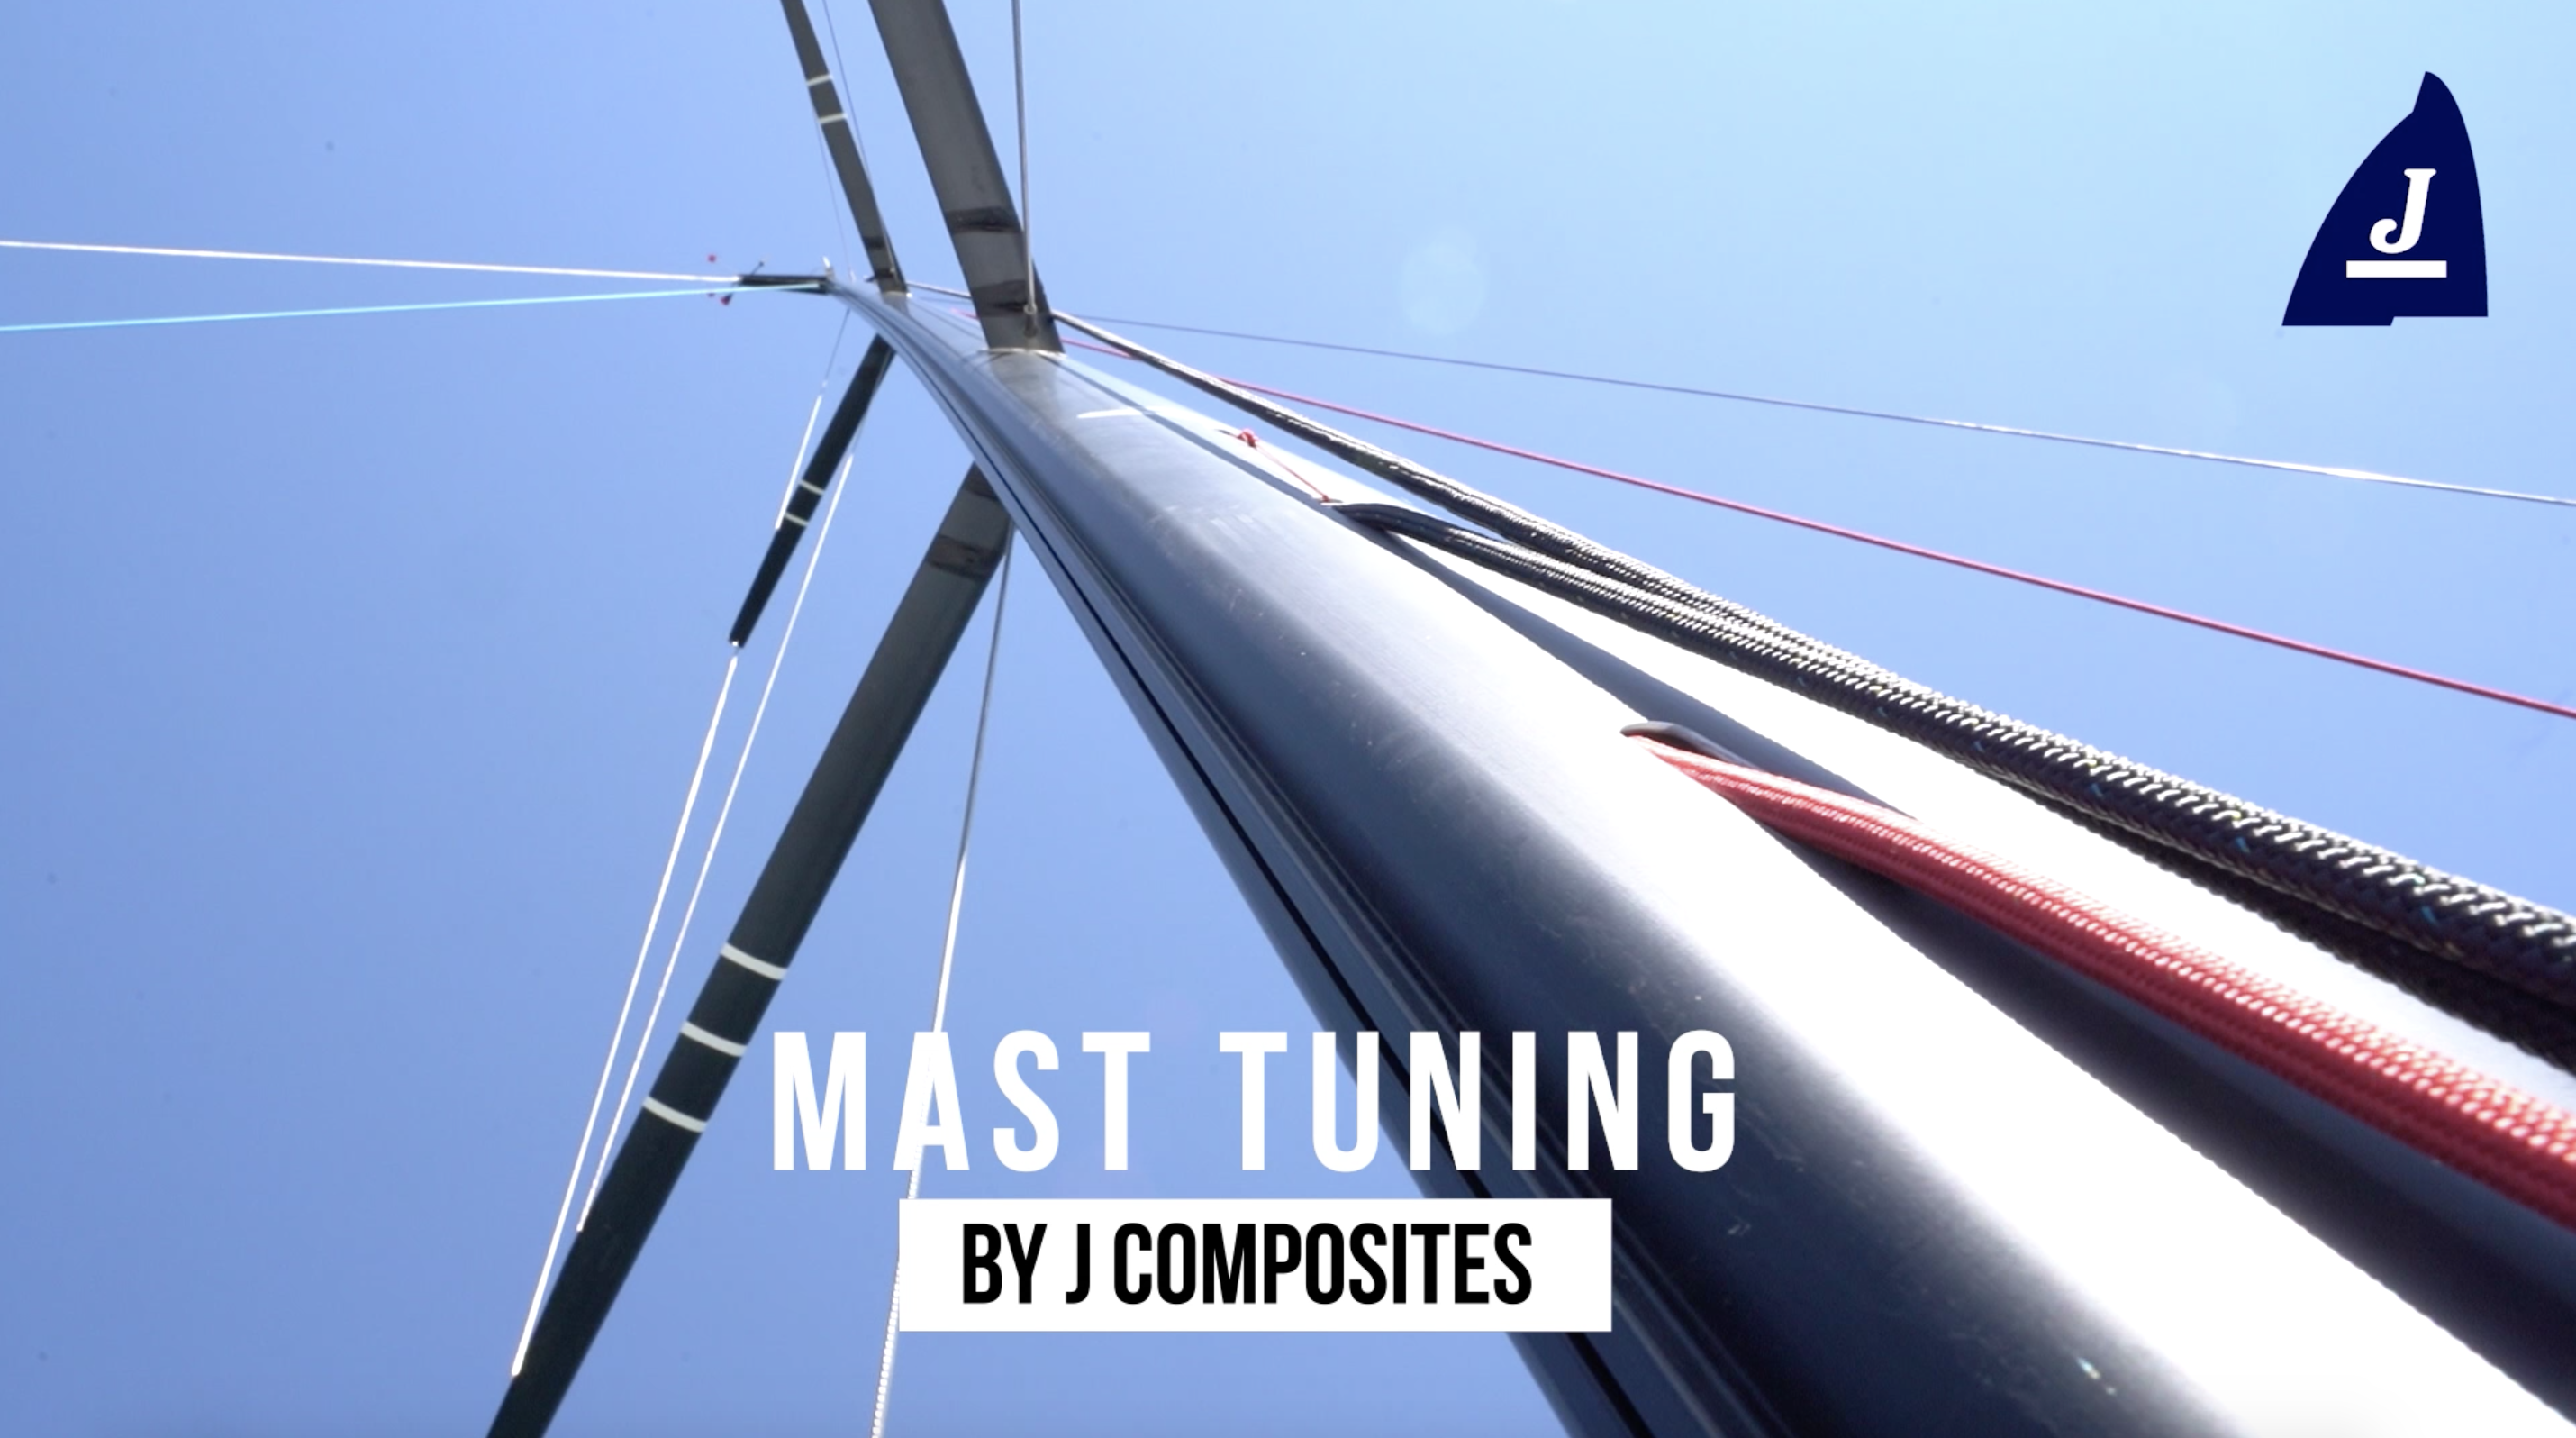 J Composites – Mast tuning